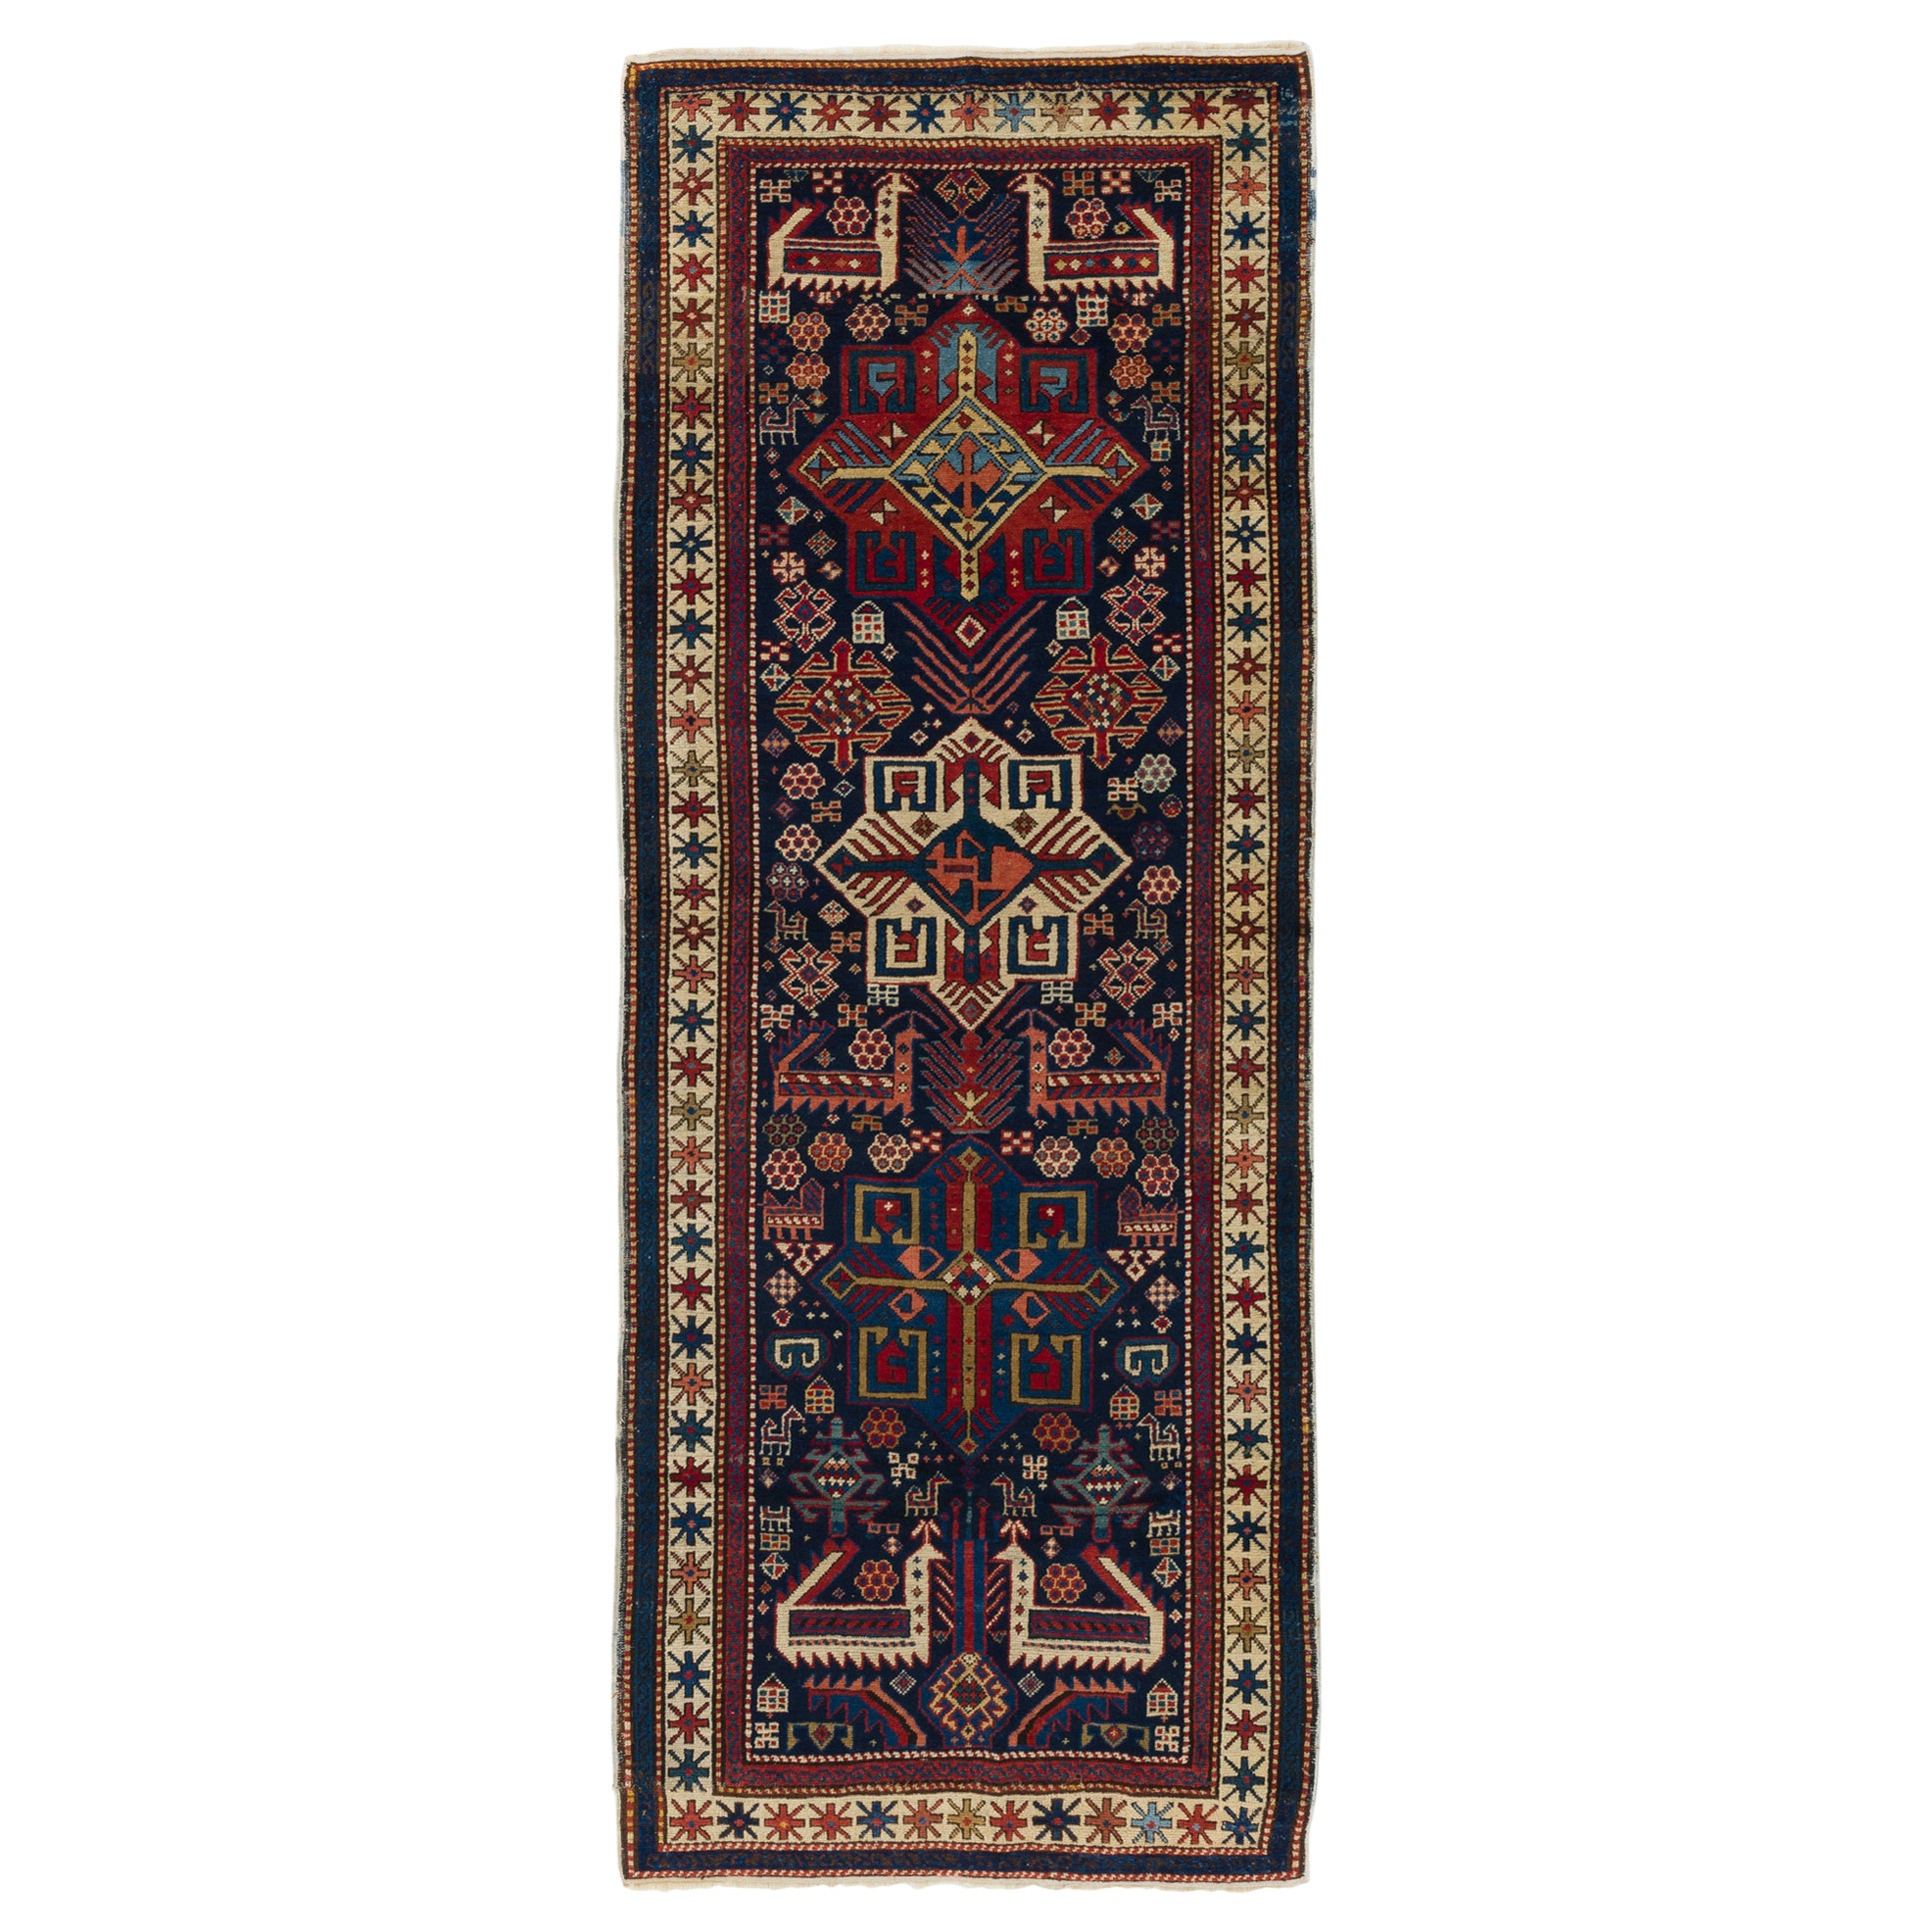 3'6"x9' Antique Caucasian Shirvan Akstafa Rug, Ca 1890